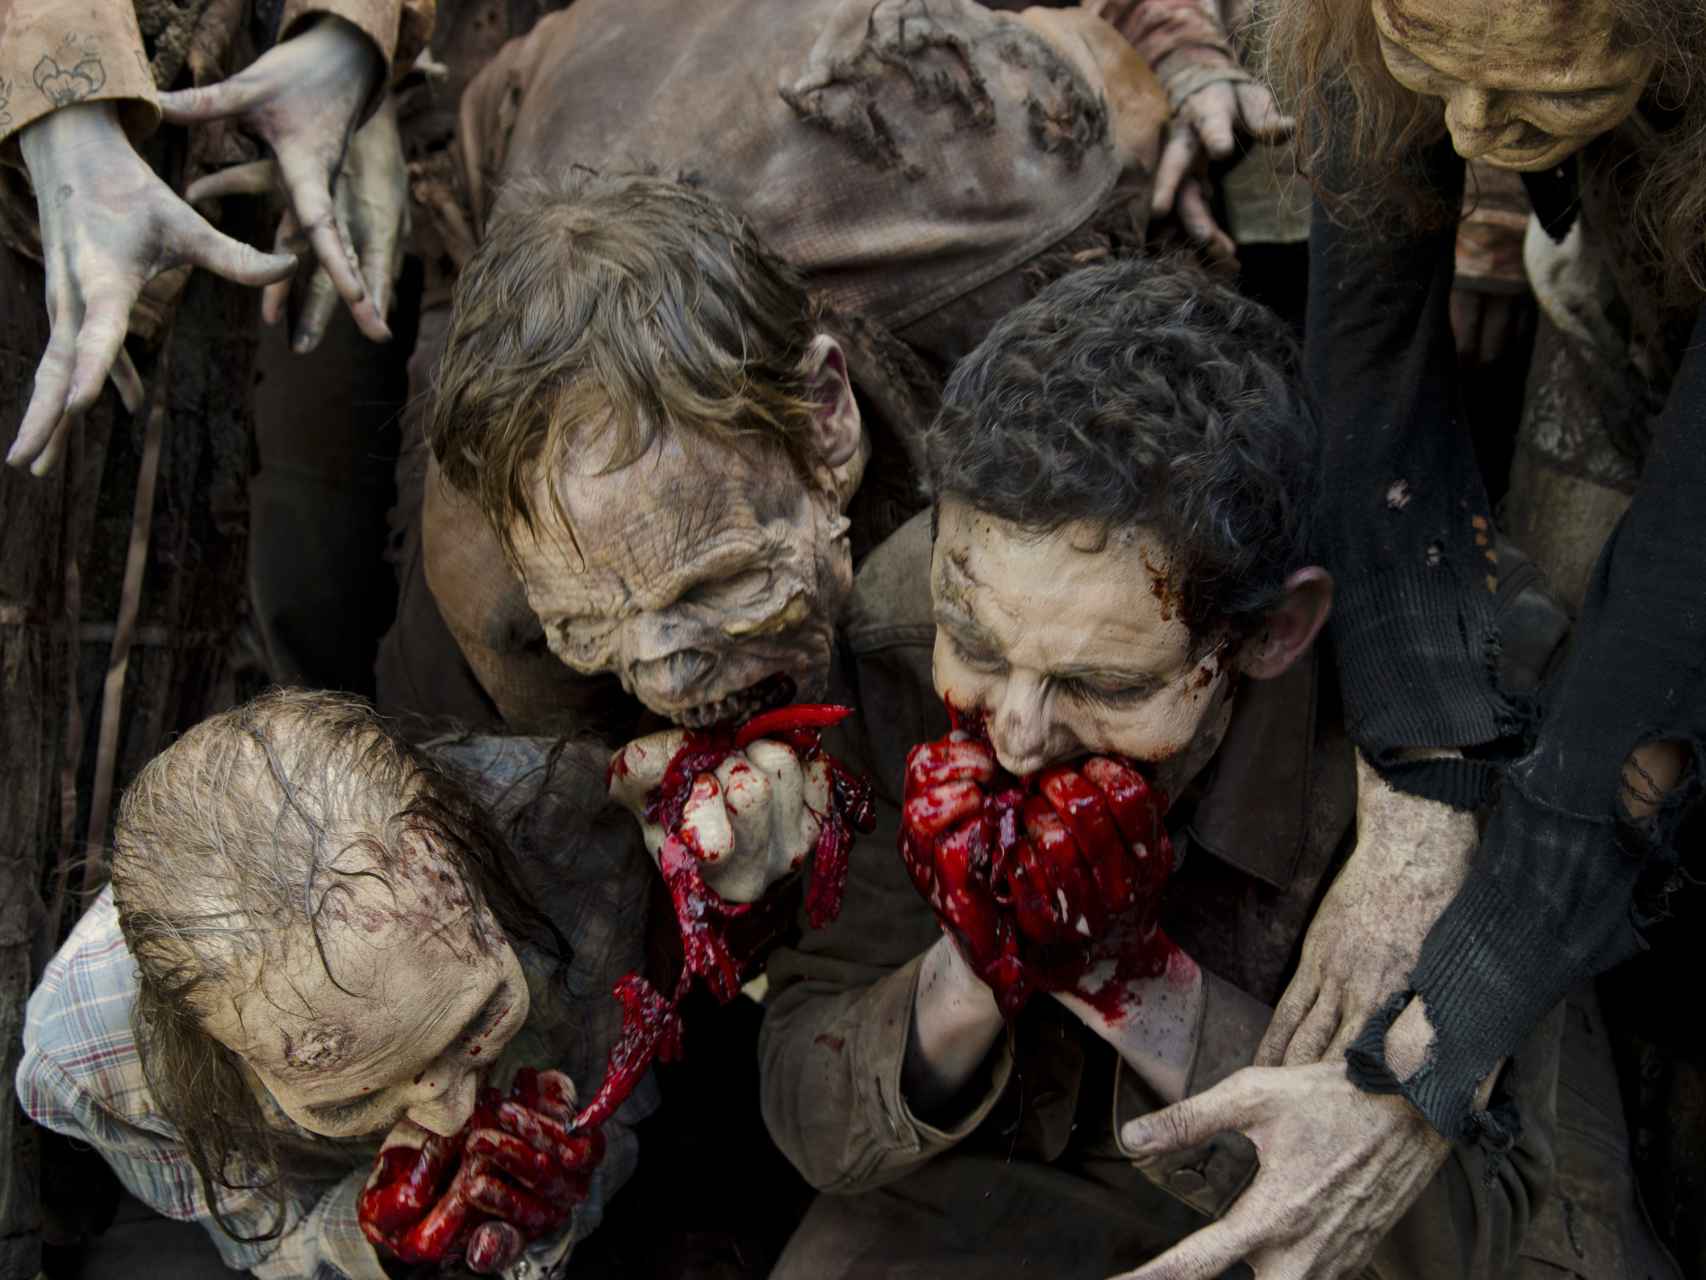 Una imagen de la sexta temporada de The walking dead.